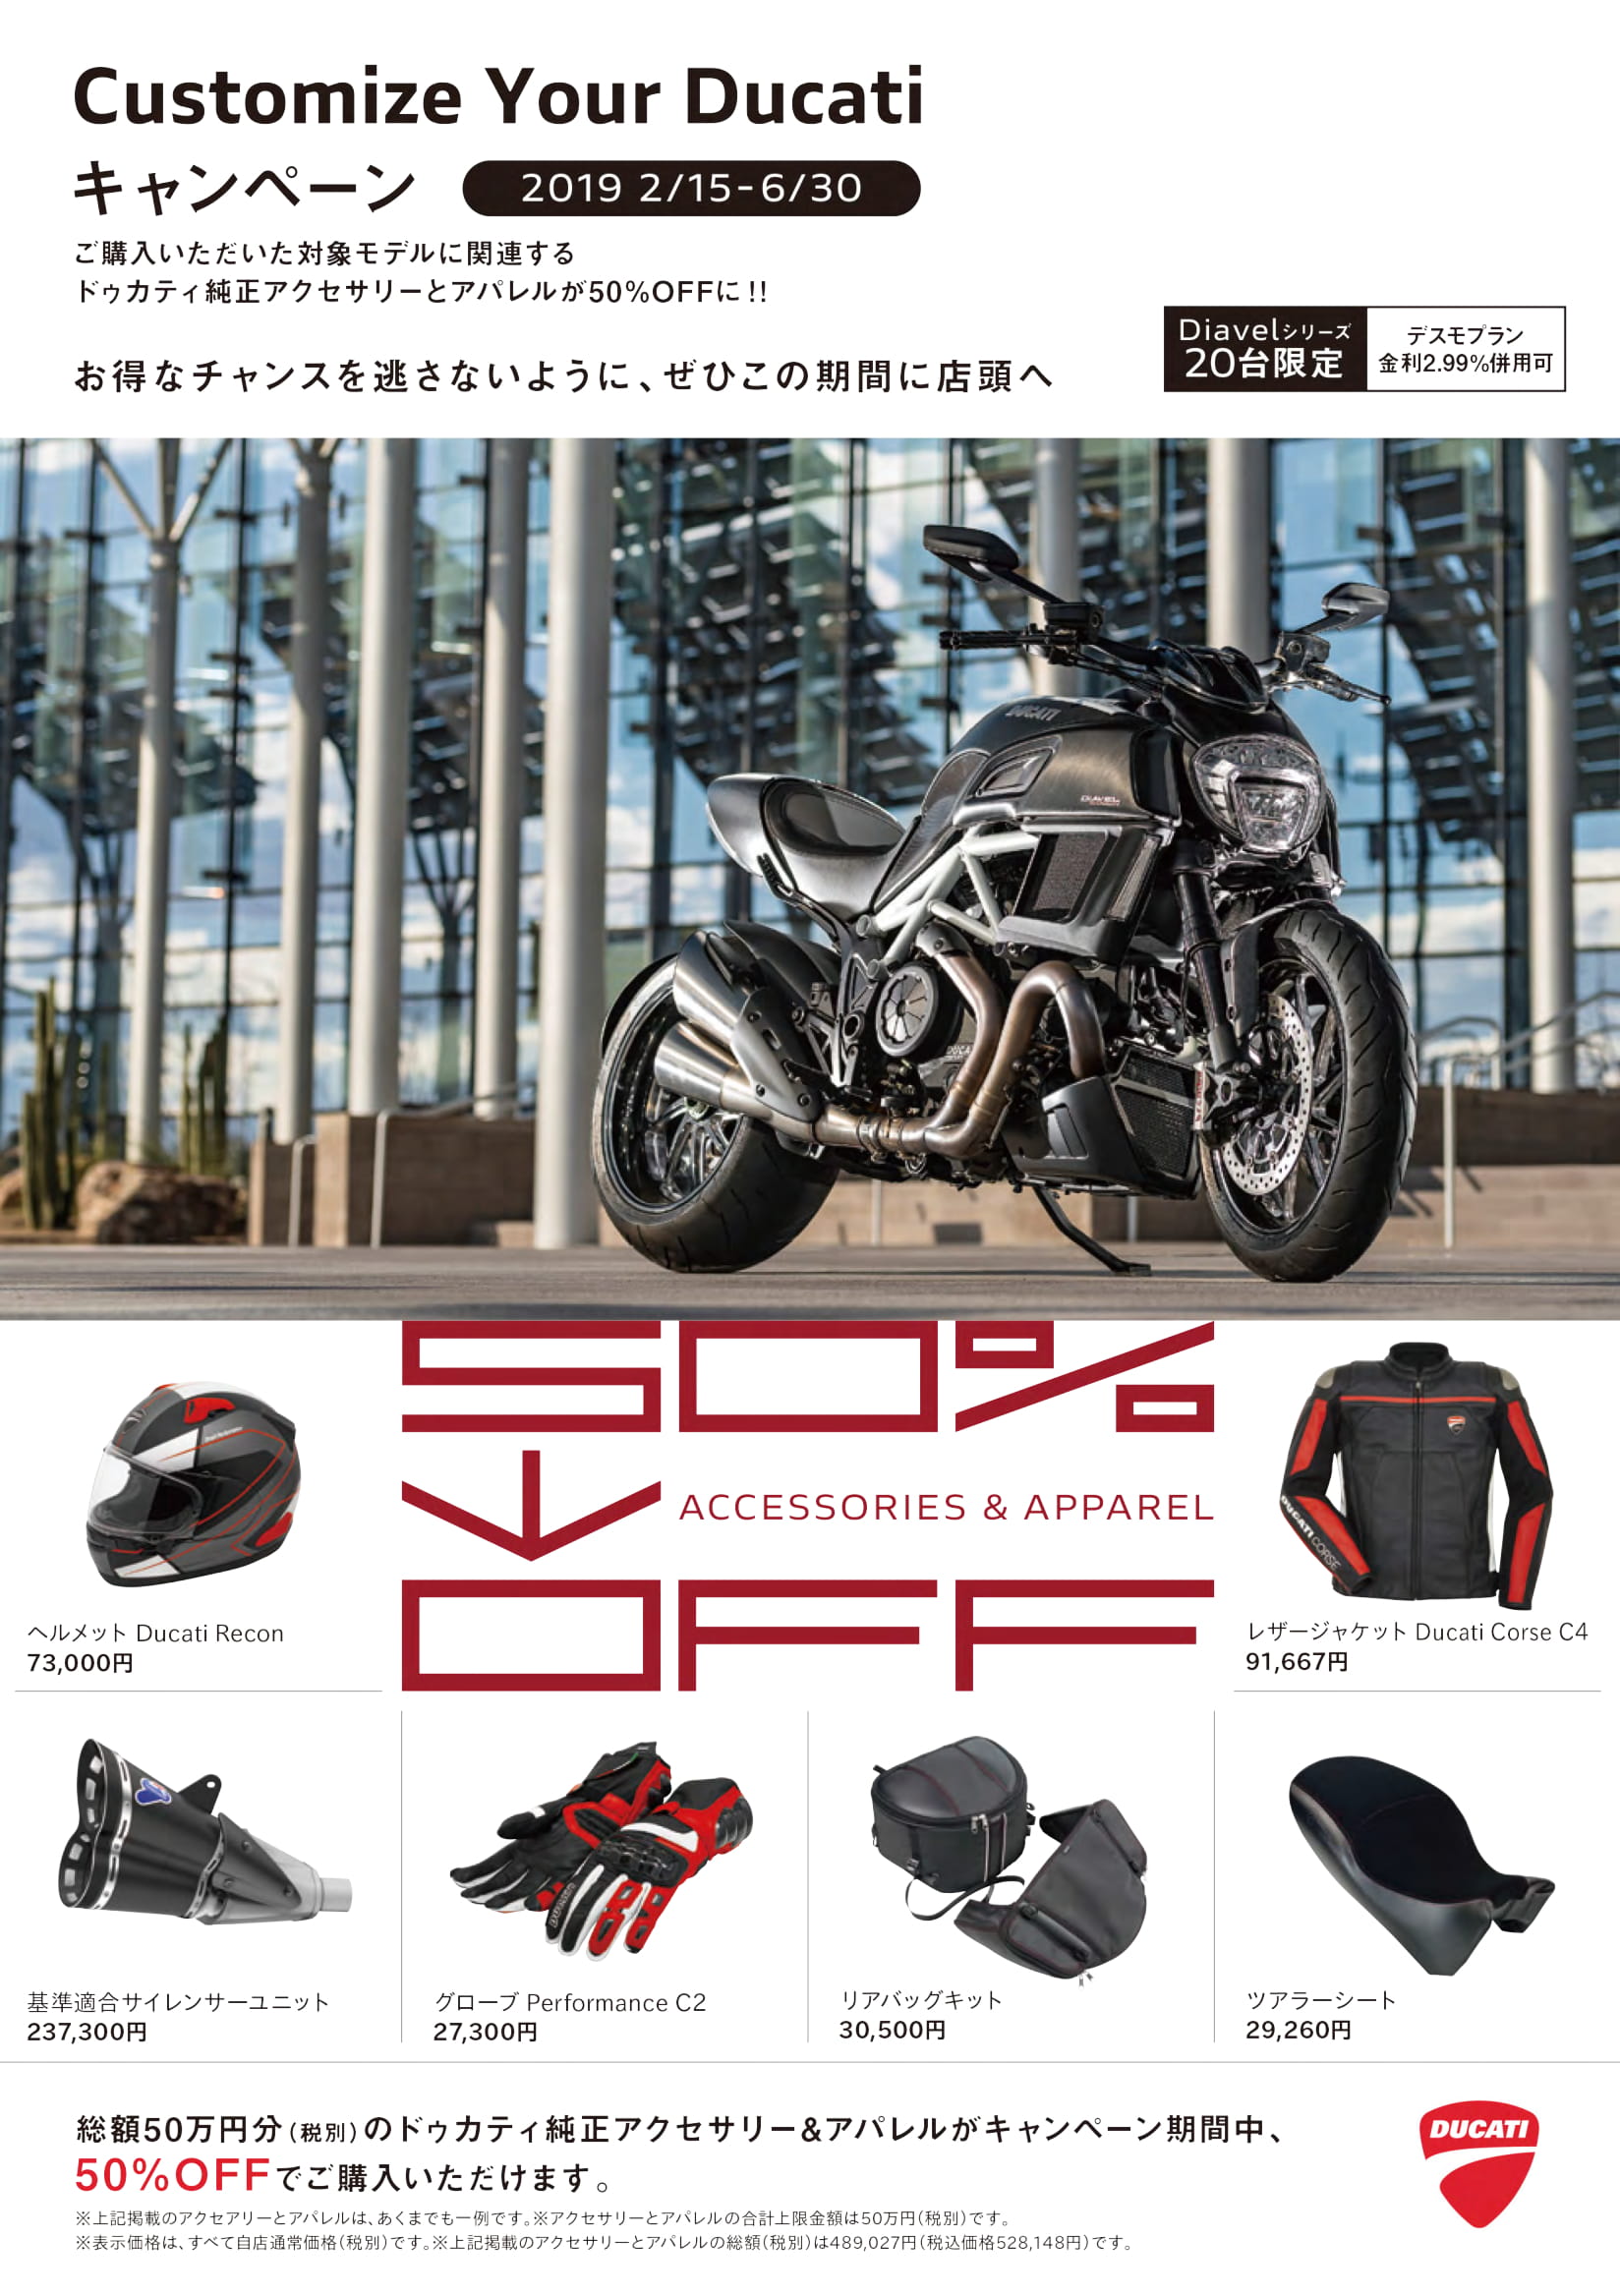 Customize Your Ducati 11